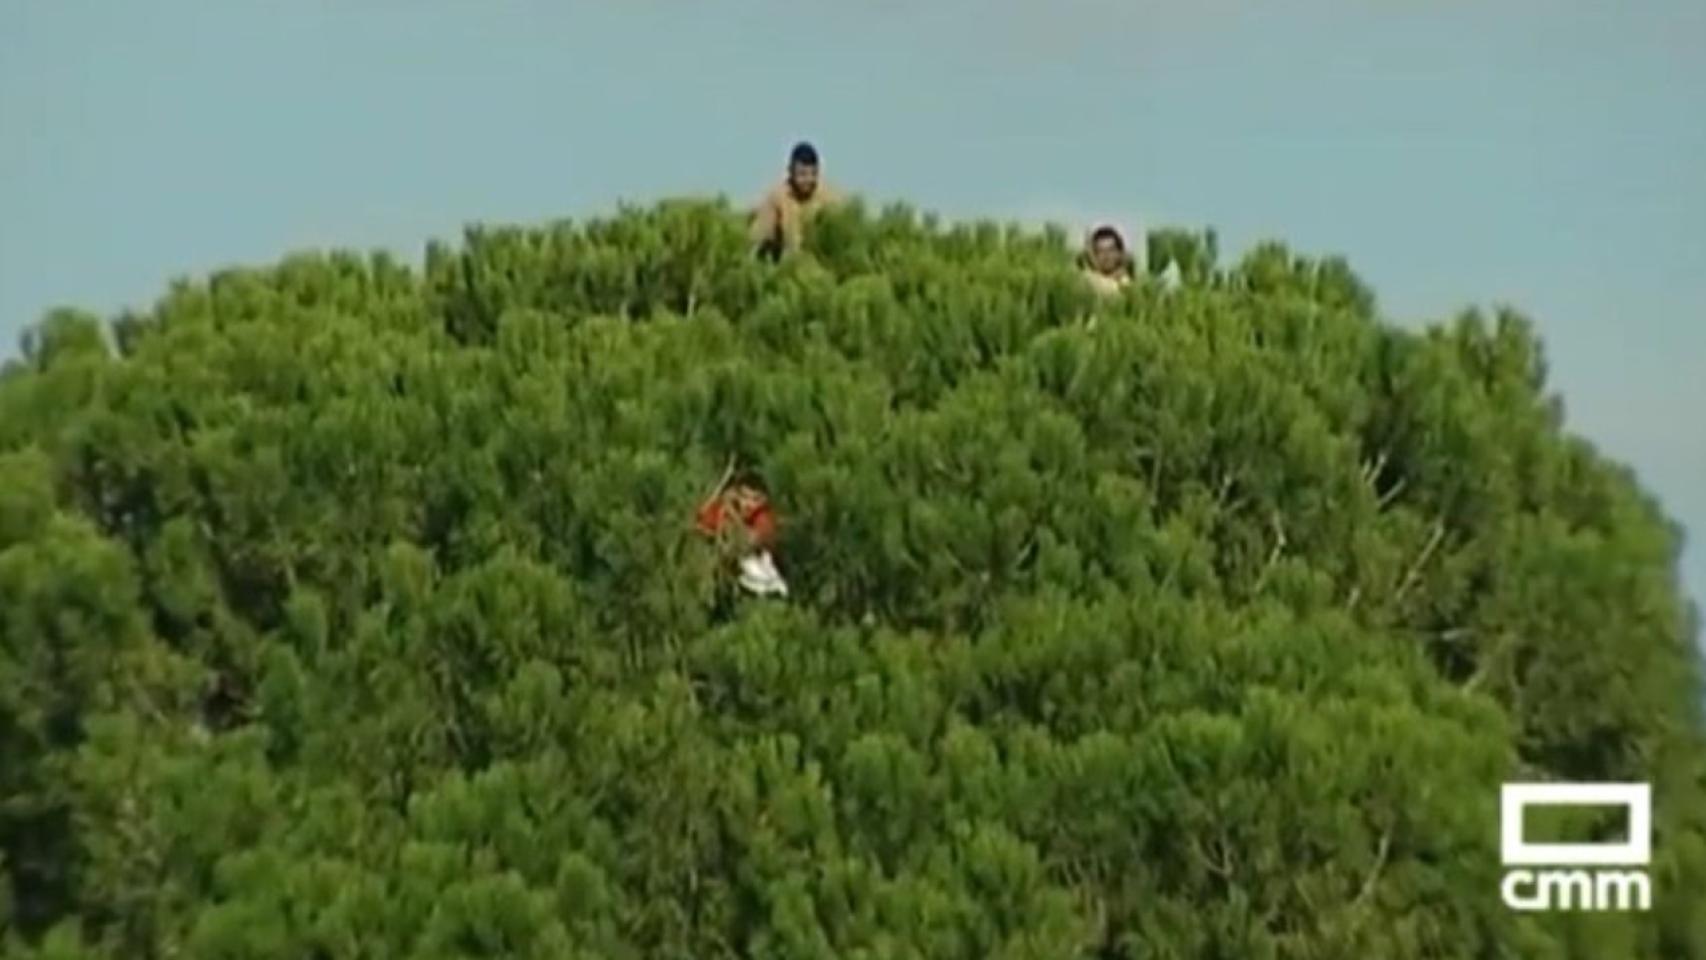 Aficionados encima de un árbol en Quintanar del Rey (Cuenca). Foto: CMM.